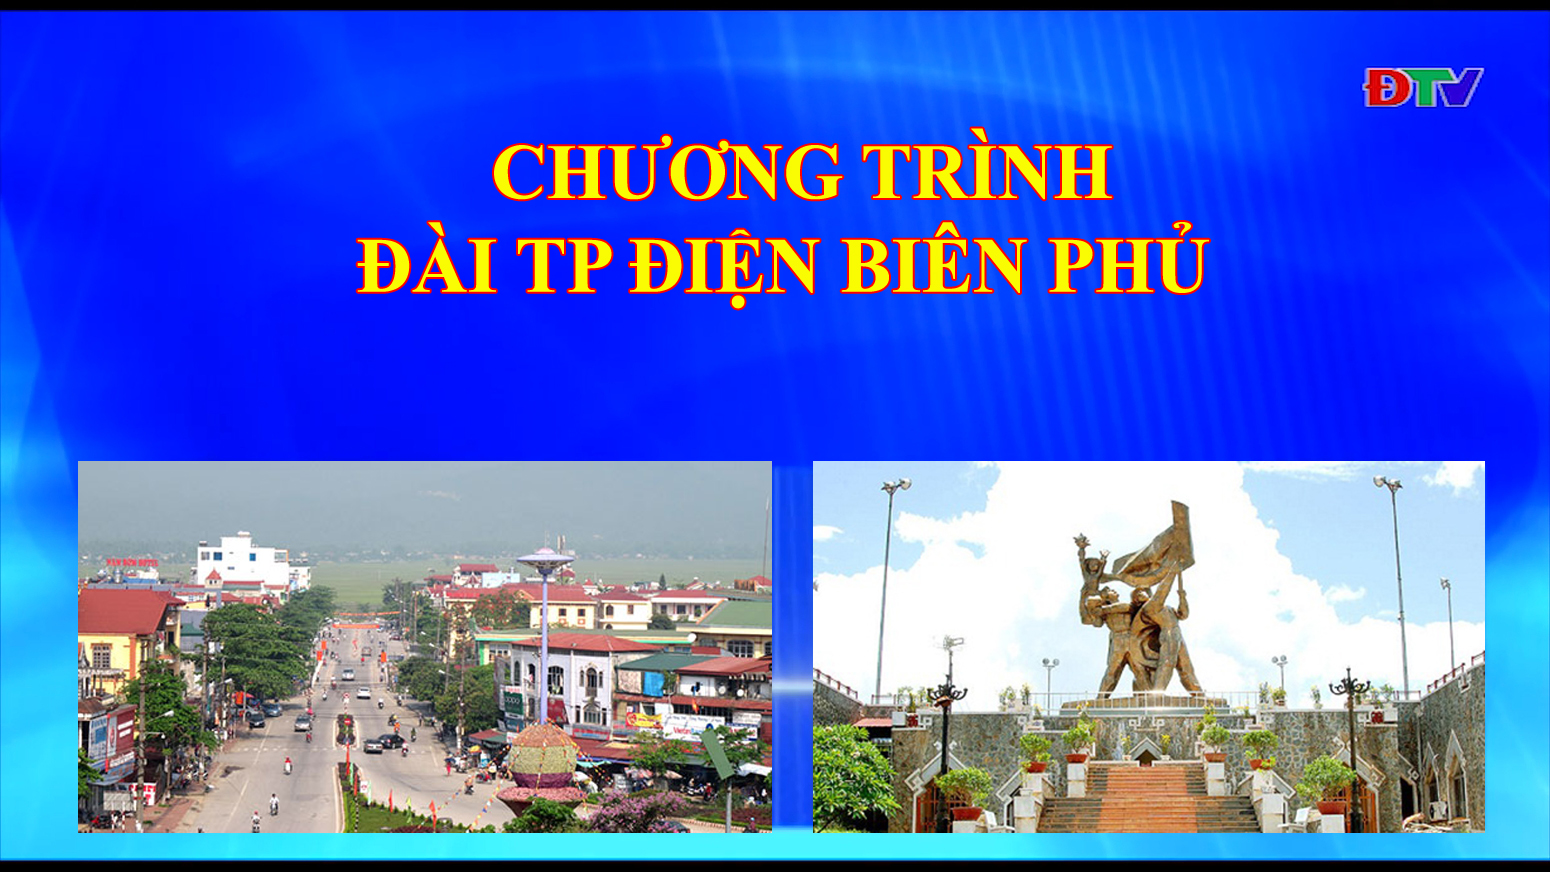 Đài thành phố Điện Biên Phủ (Ngày 24/03/2020)